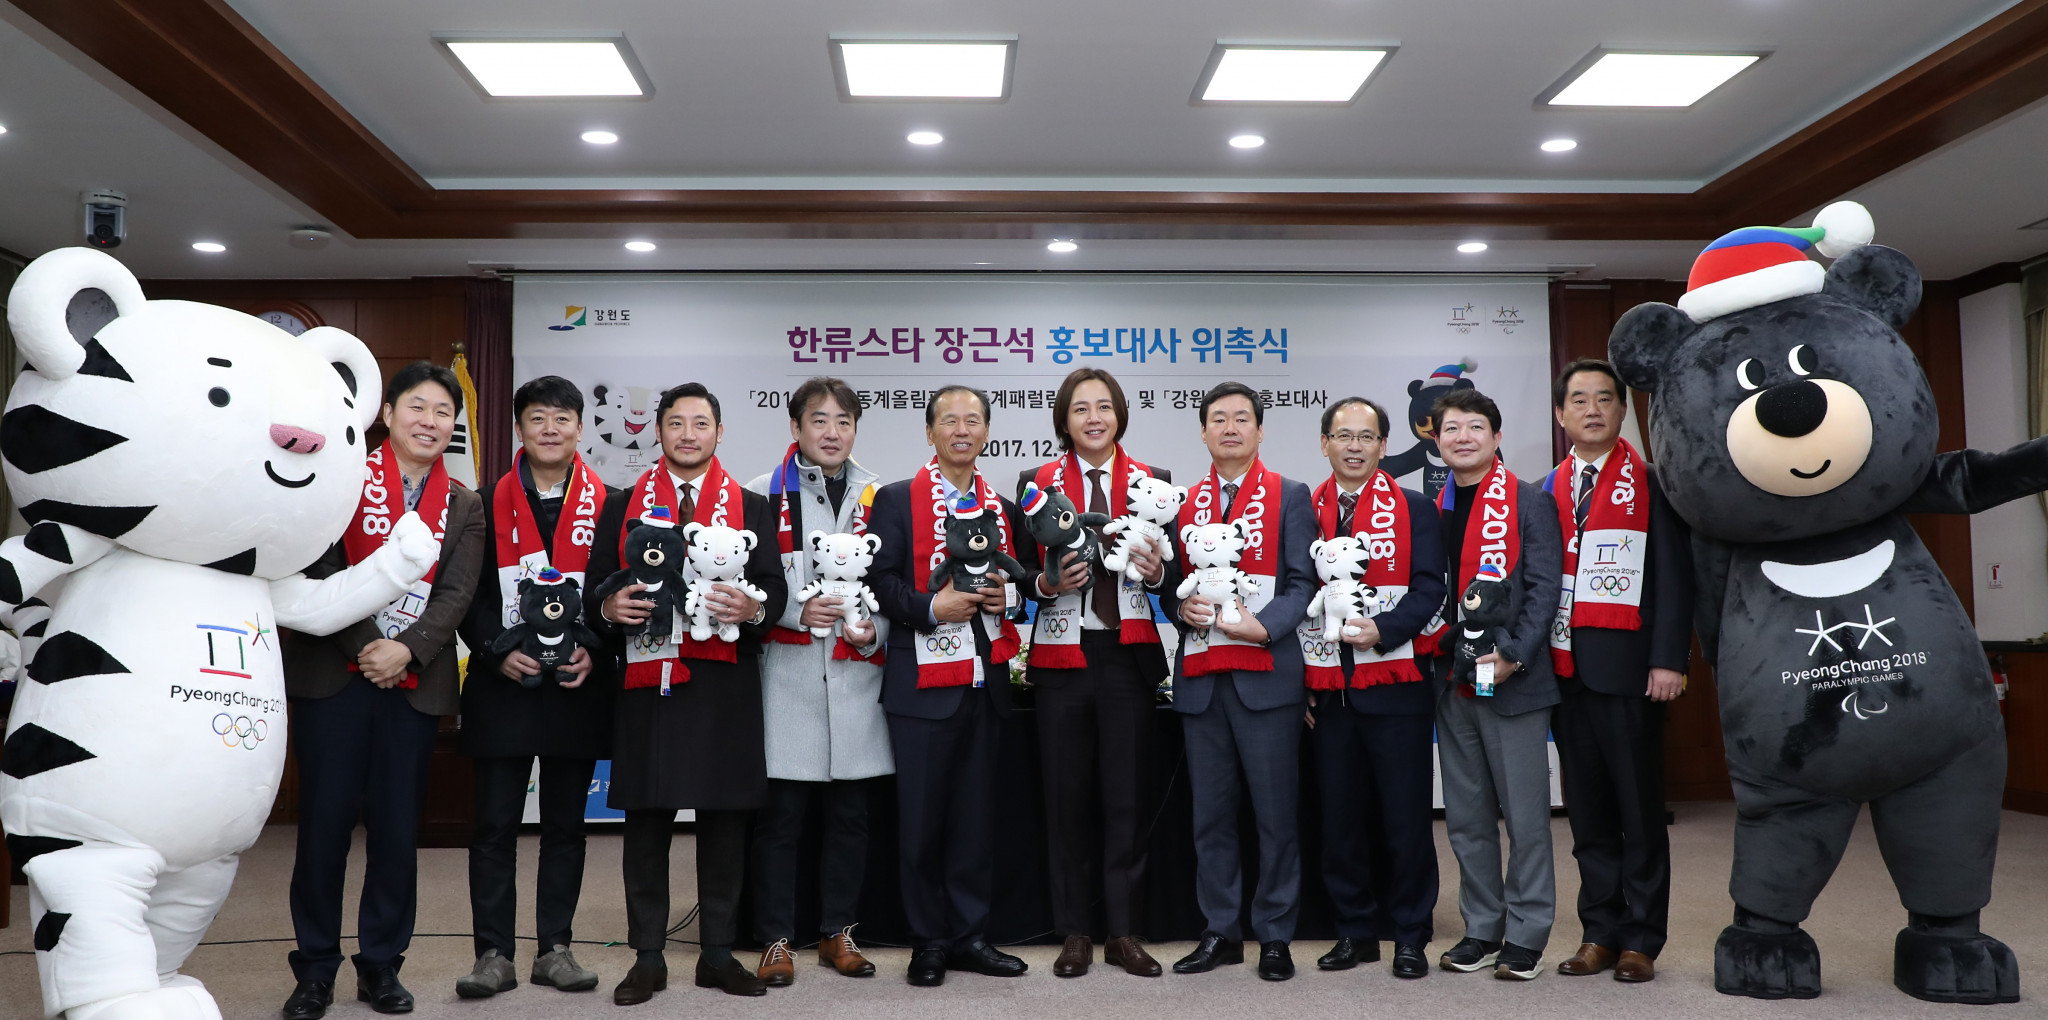 Jang Keun-suk, centre, plans to use concerts in Japan next month to help promote Pyeongchang 2018 ©Pyeongchang 2018 